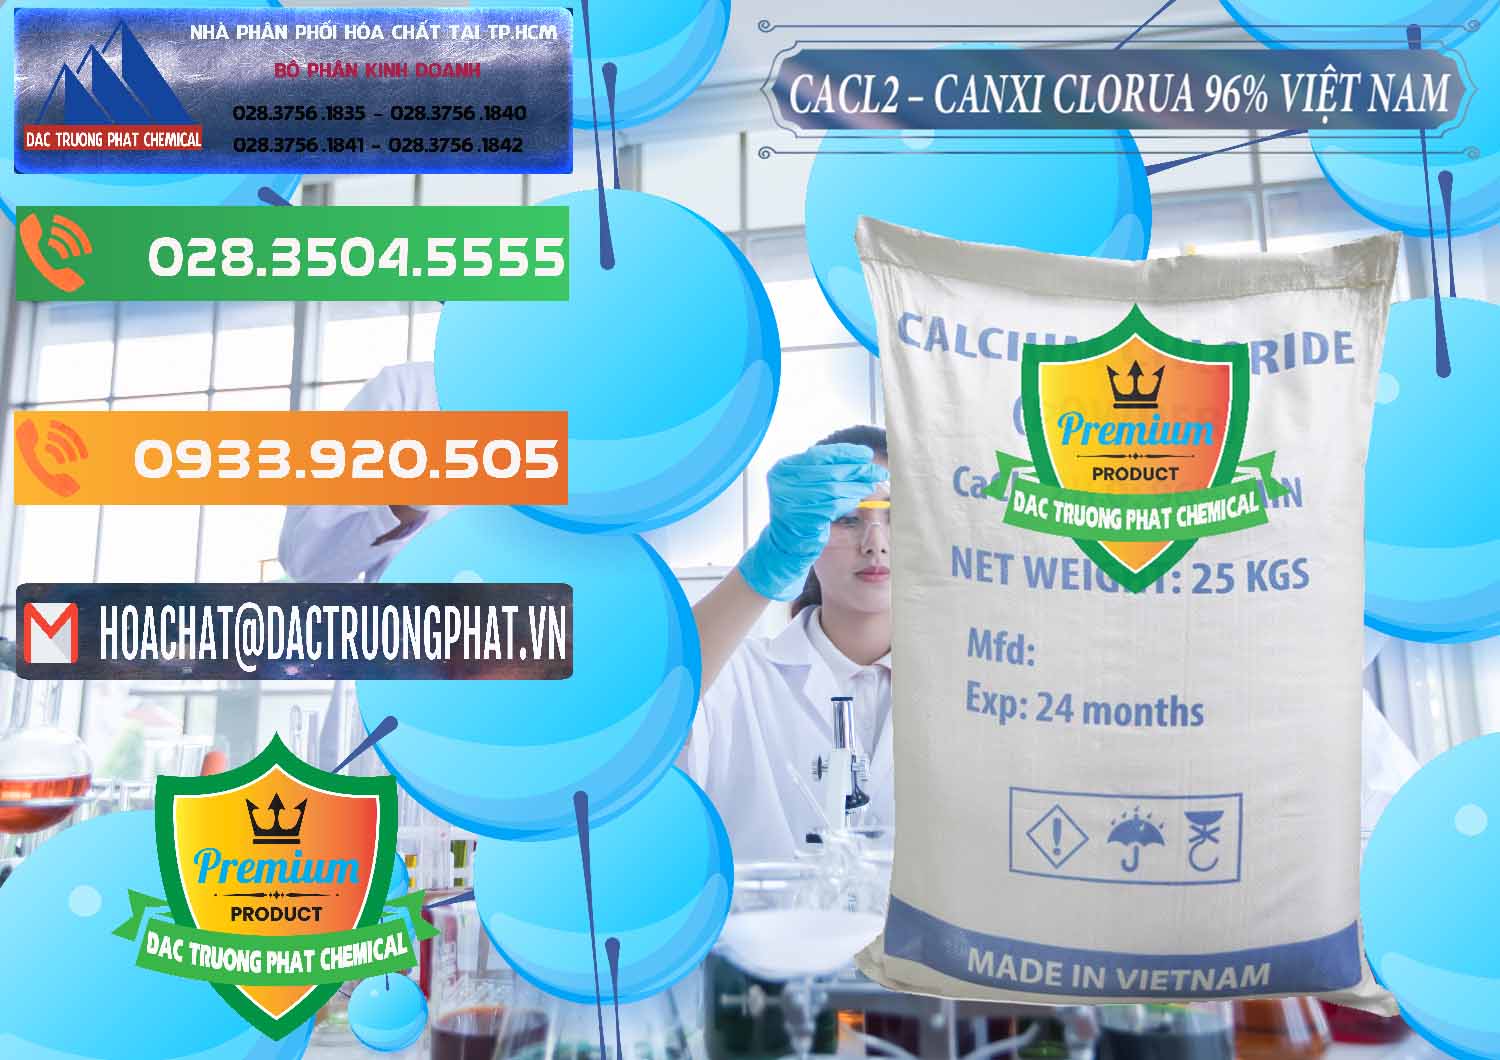 Chuyên bán - phân phối CaCl2 – Canxi Clorua 96% Việt Nam - 0236 - Nhà phân phối ( kinh doanh ) hóa chất tại TP.HCM - hoachatxulynuoc.com.vn